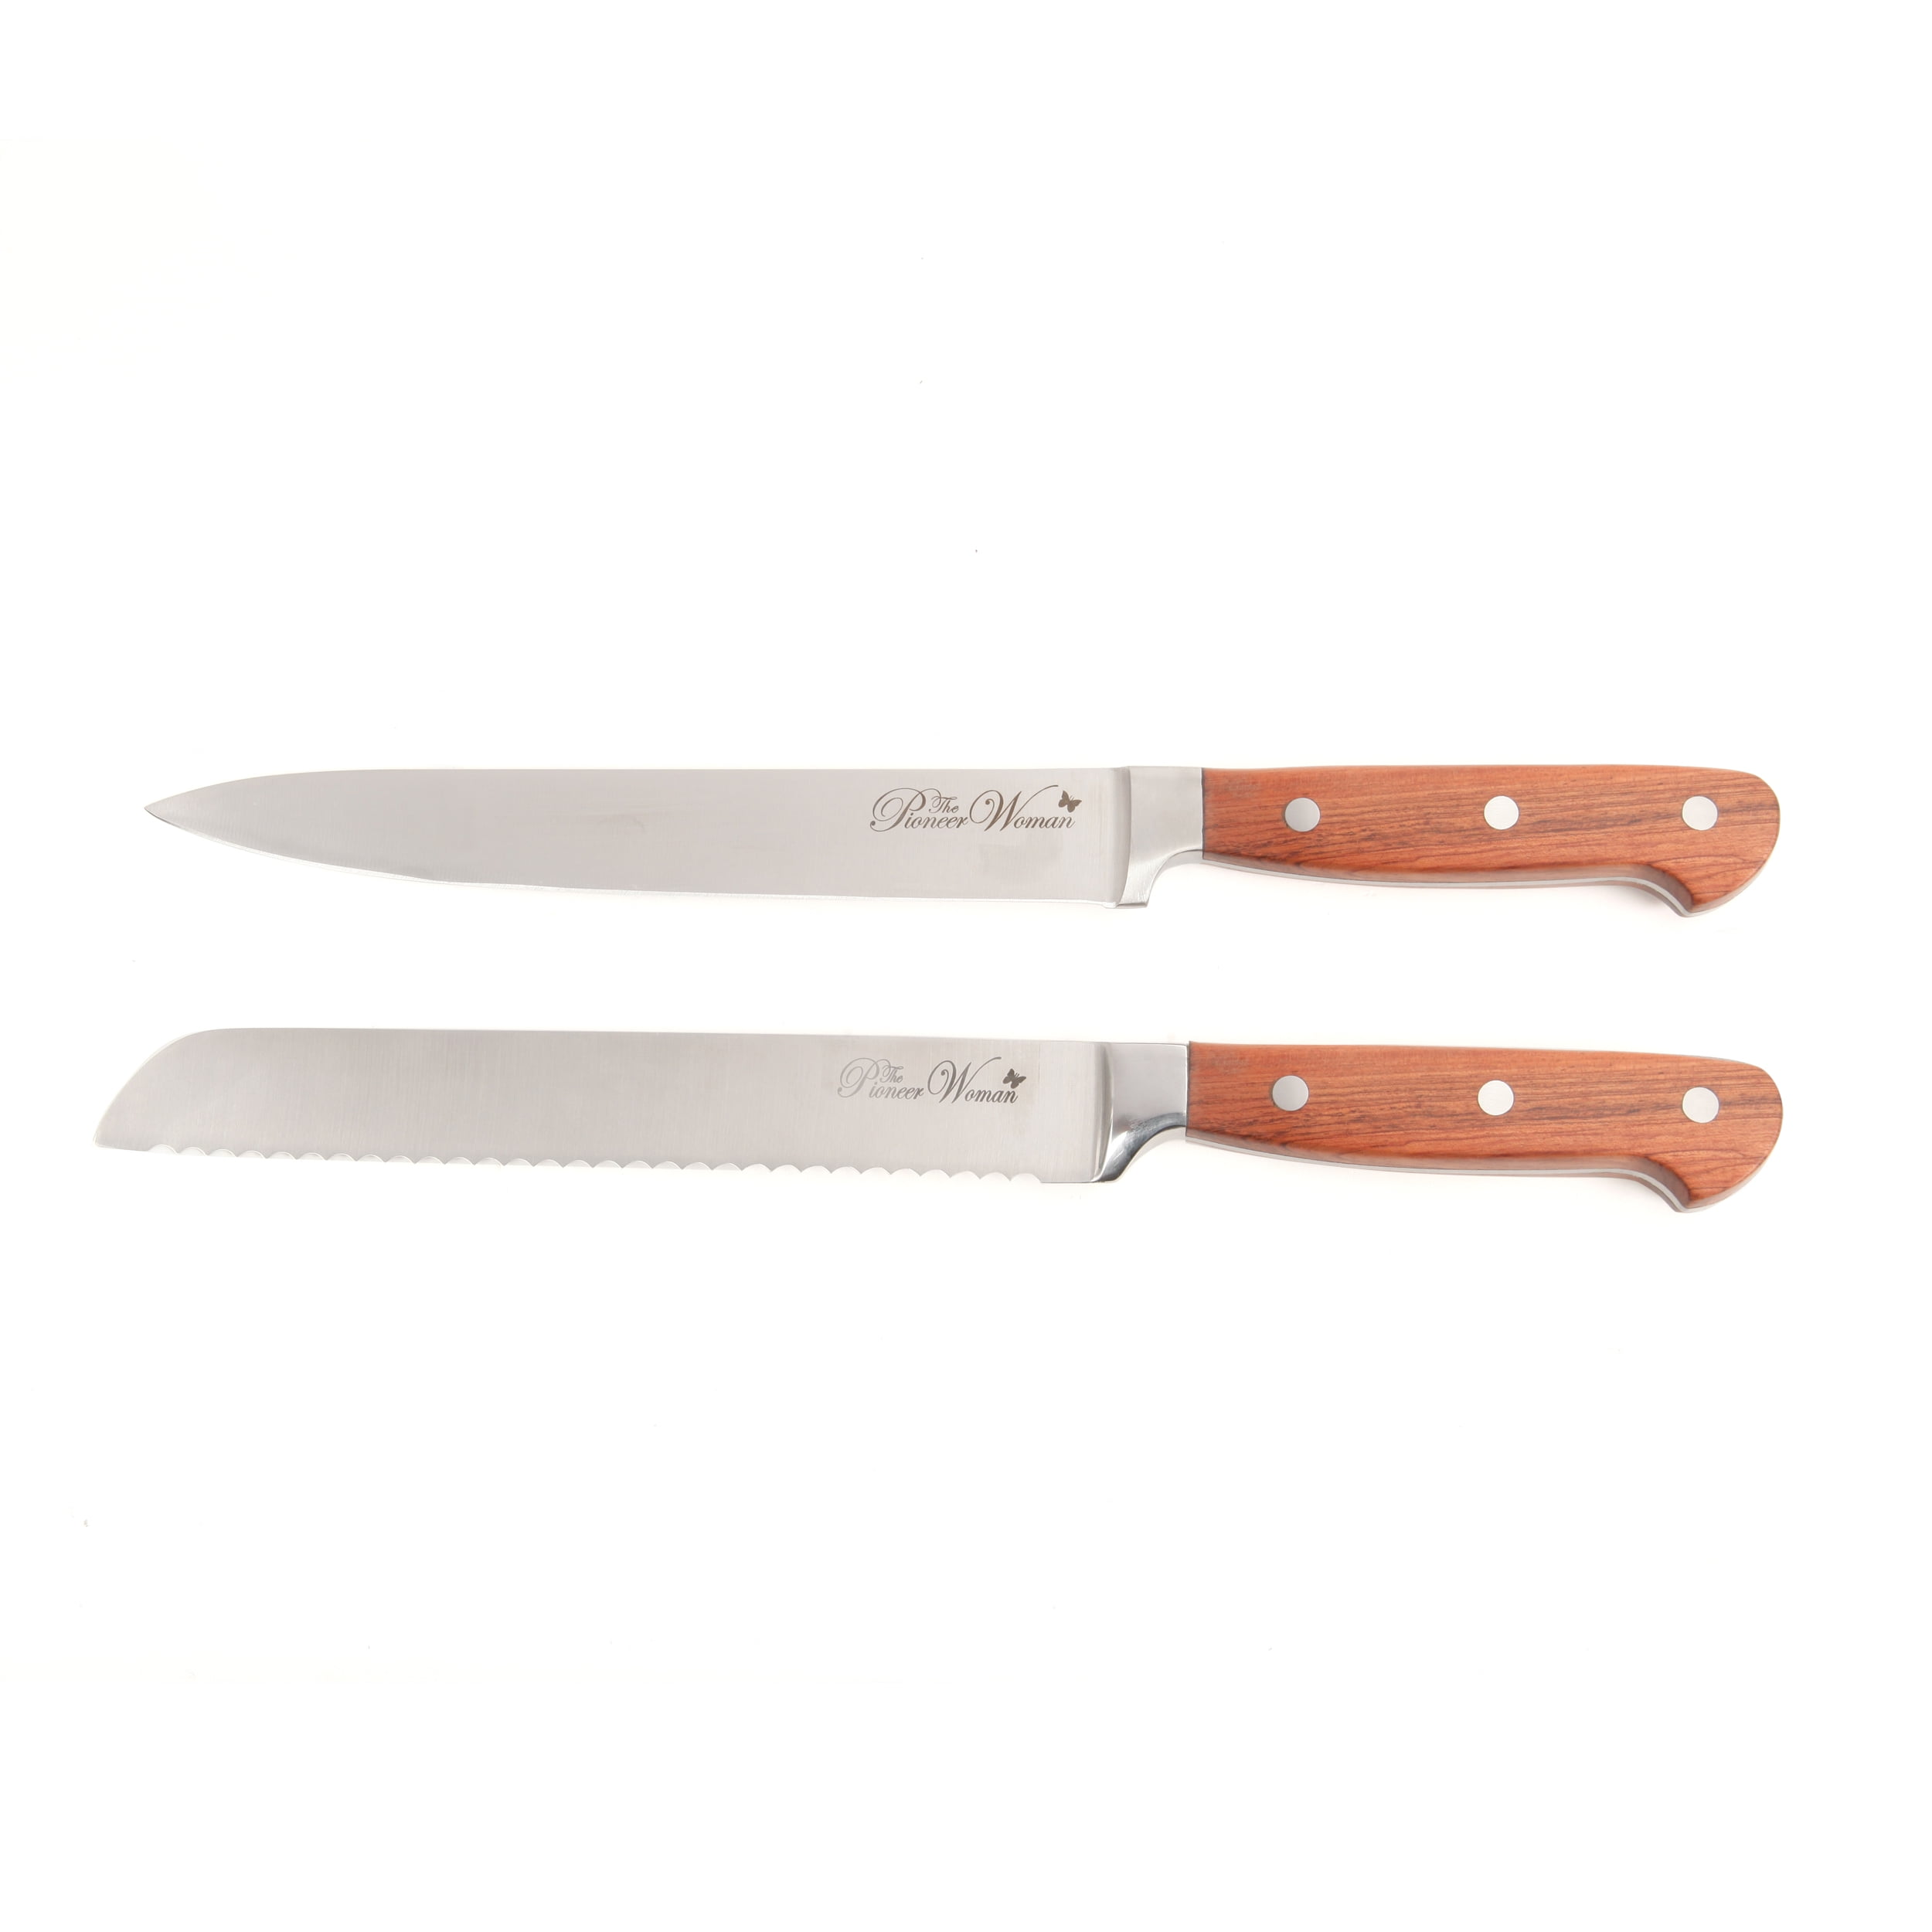 Pioneer Woman Rustic Knife Block Set with Rosewood Handles $50.58! (Reg.  $70.35) - Freebies2Deals